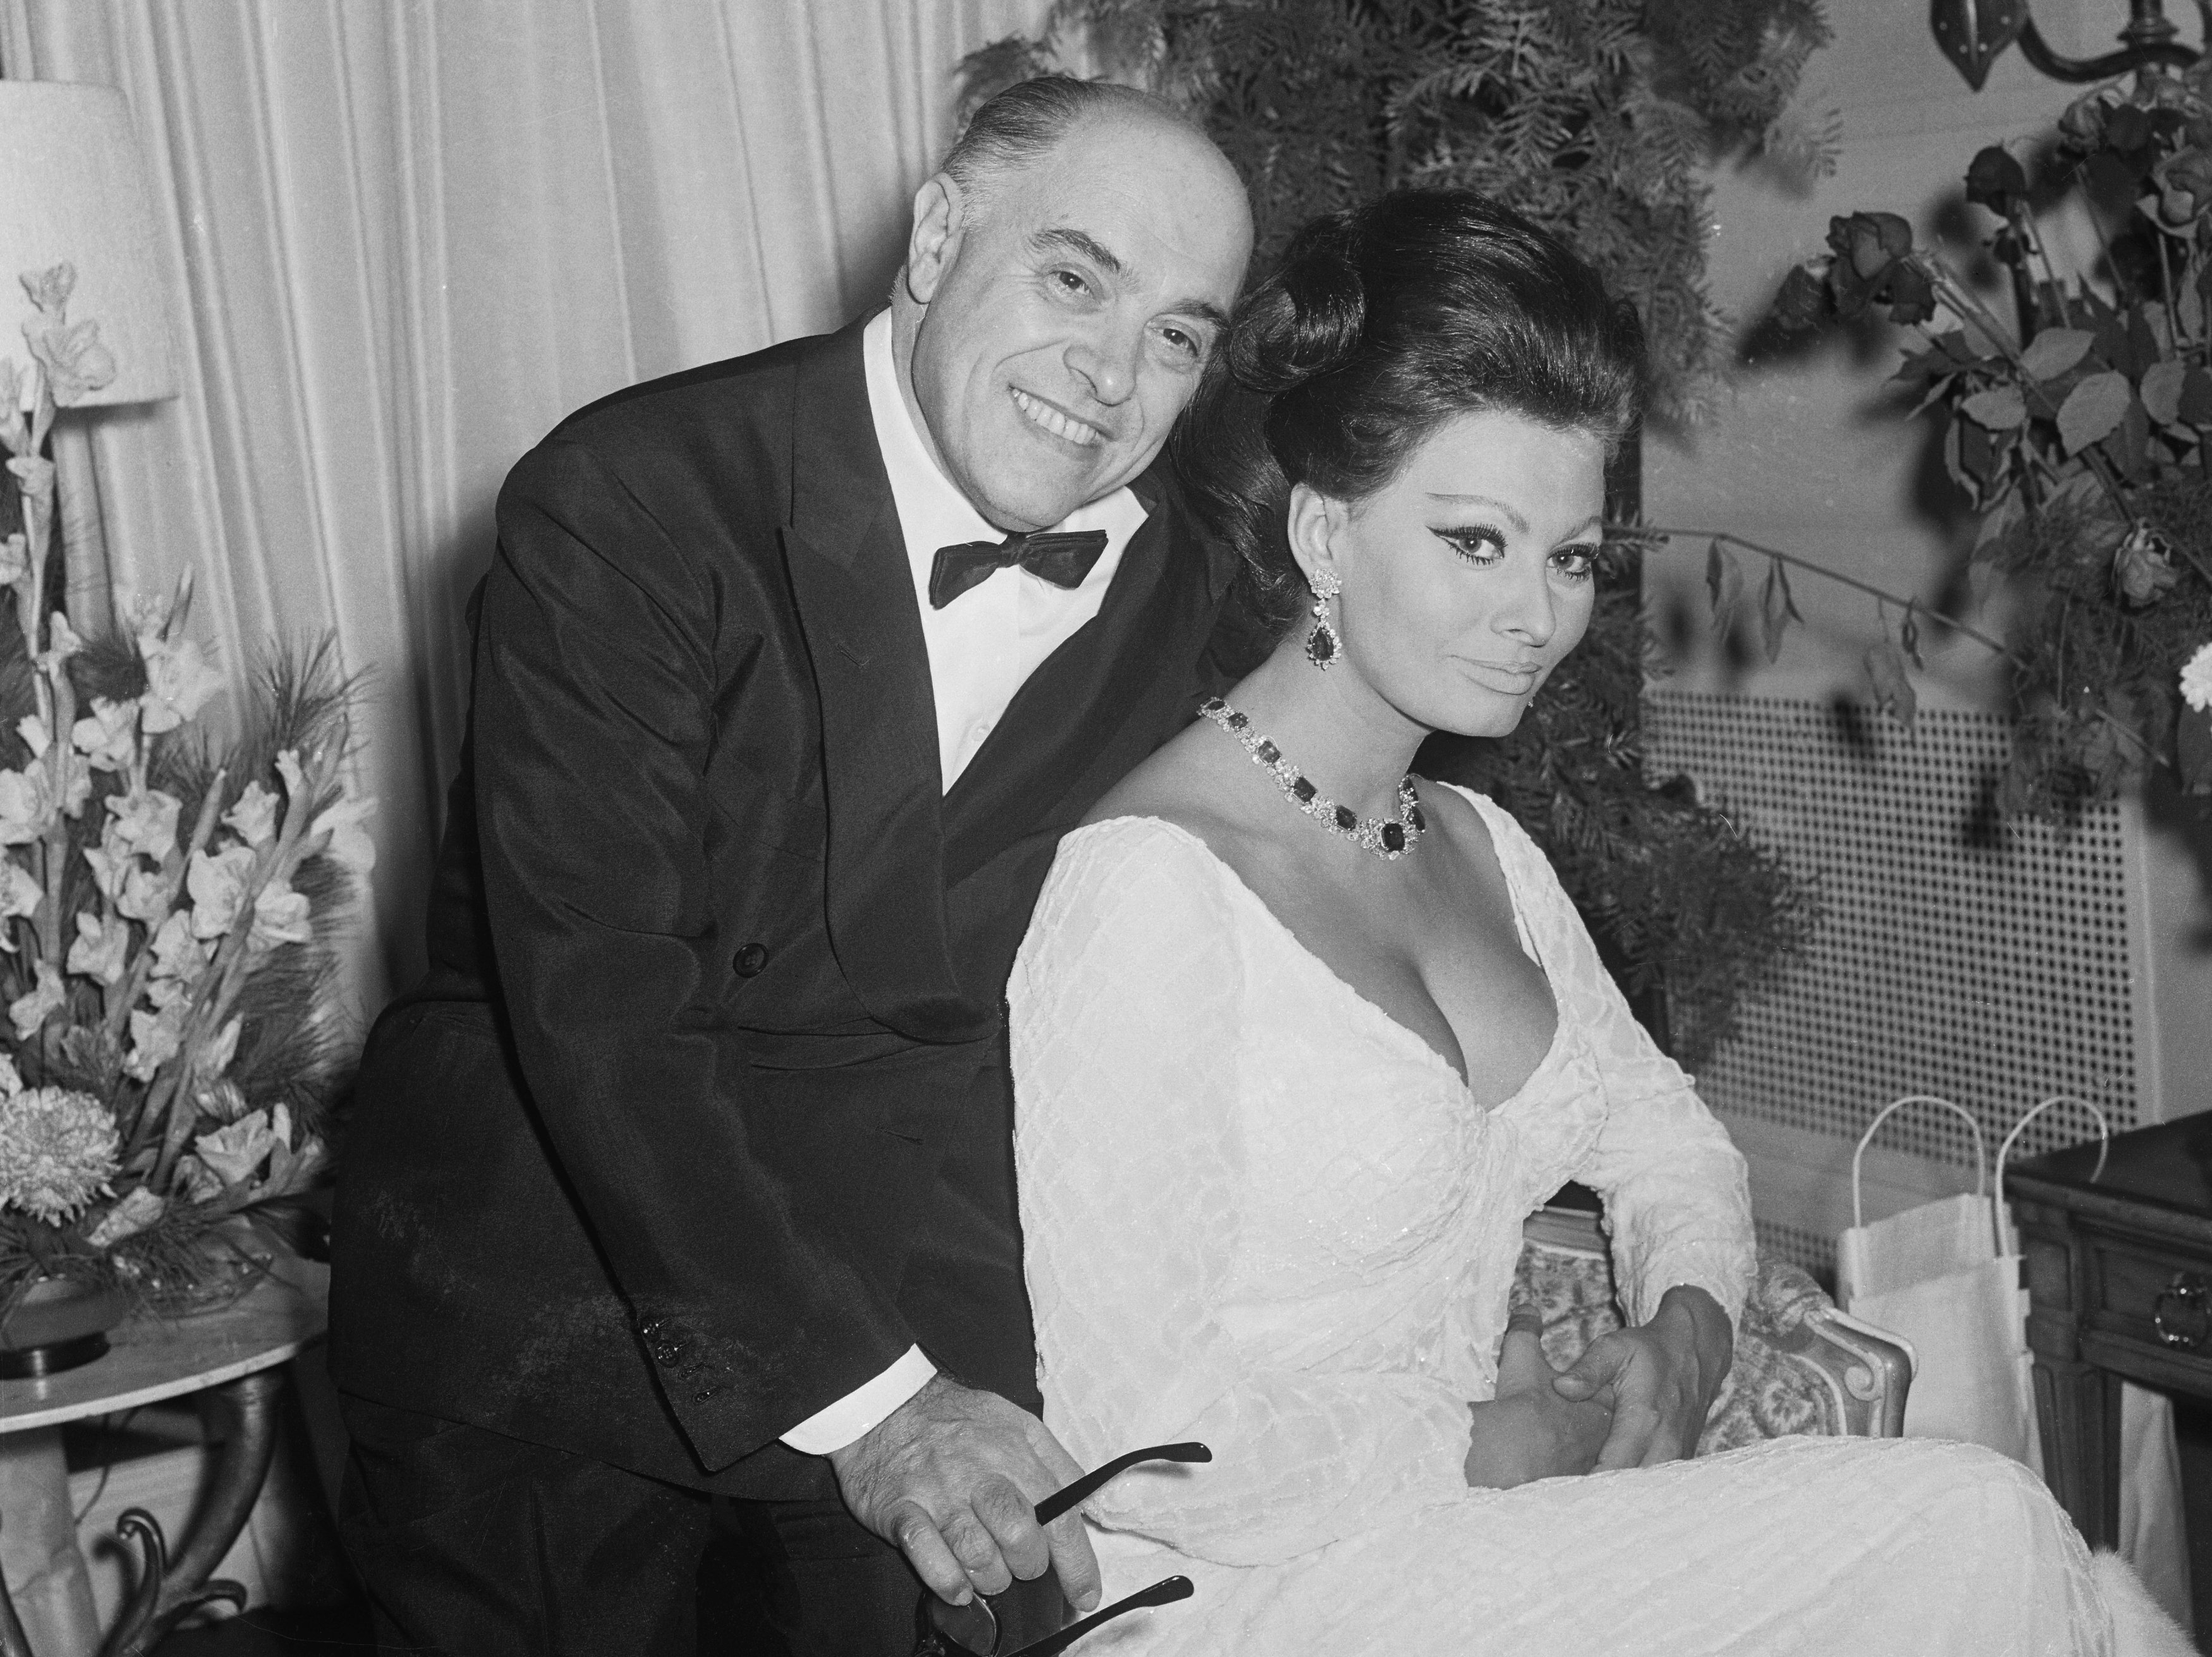 Sophia Loren und Carlo Ponti fotografierten in ihrem New Yorker Hotel, nachdem sie die gute Nachricht erhalten hatten, dass seine erste Frau in Frankreich geschieden wurde, was es ihnen ermöglichte, zu heiraten. | Quelle: Getty Images